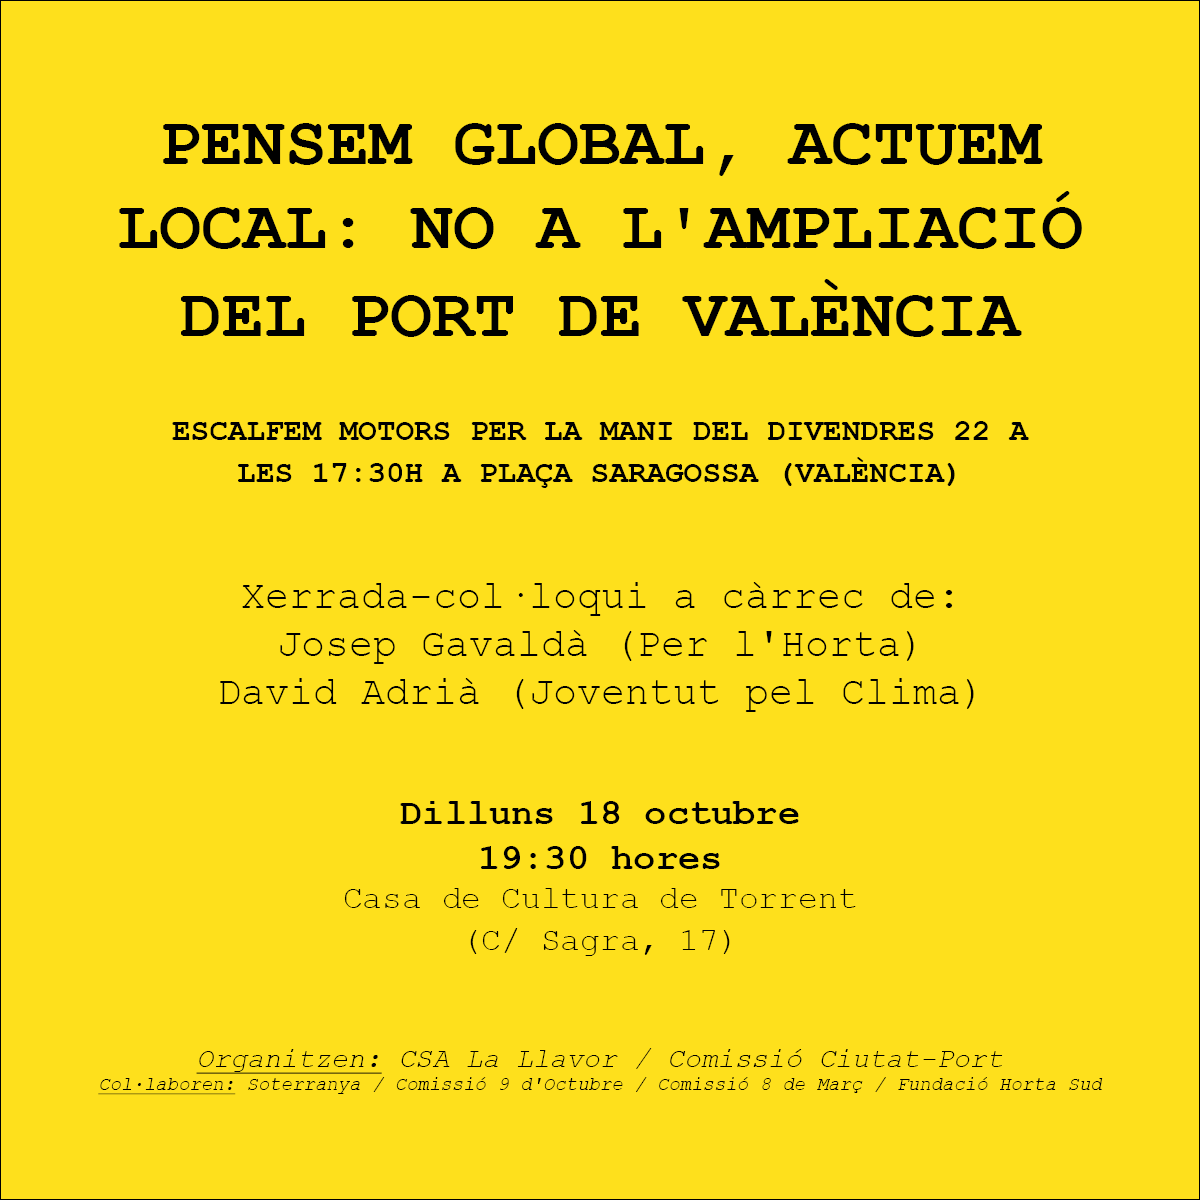 Pensem Global, Actuem Local: No a L'Ampliació del Port de València